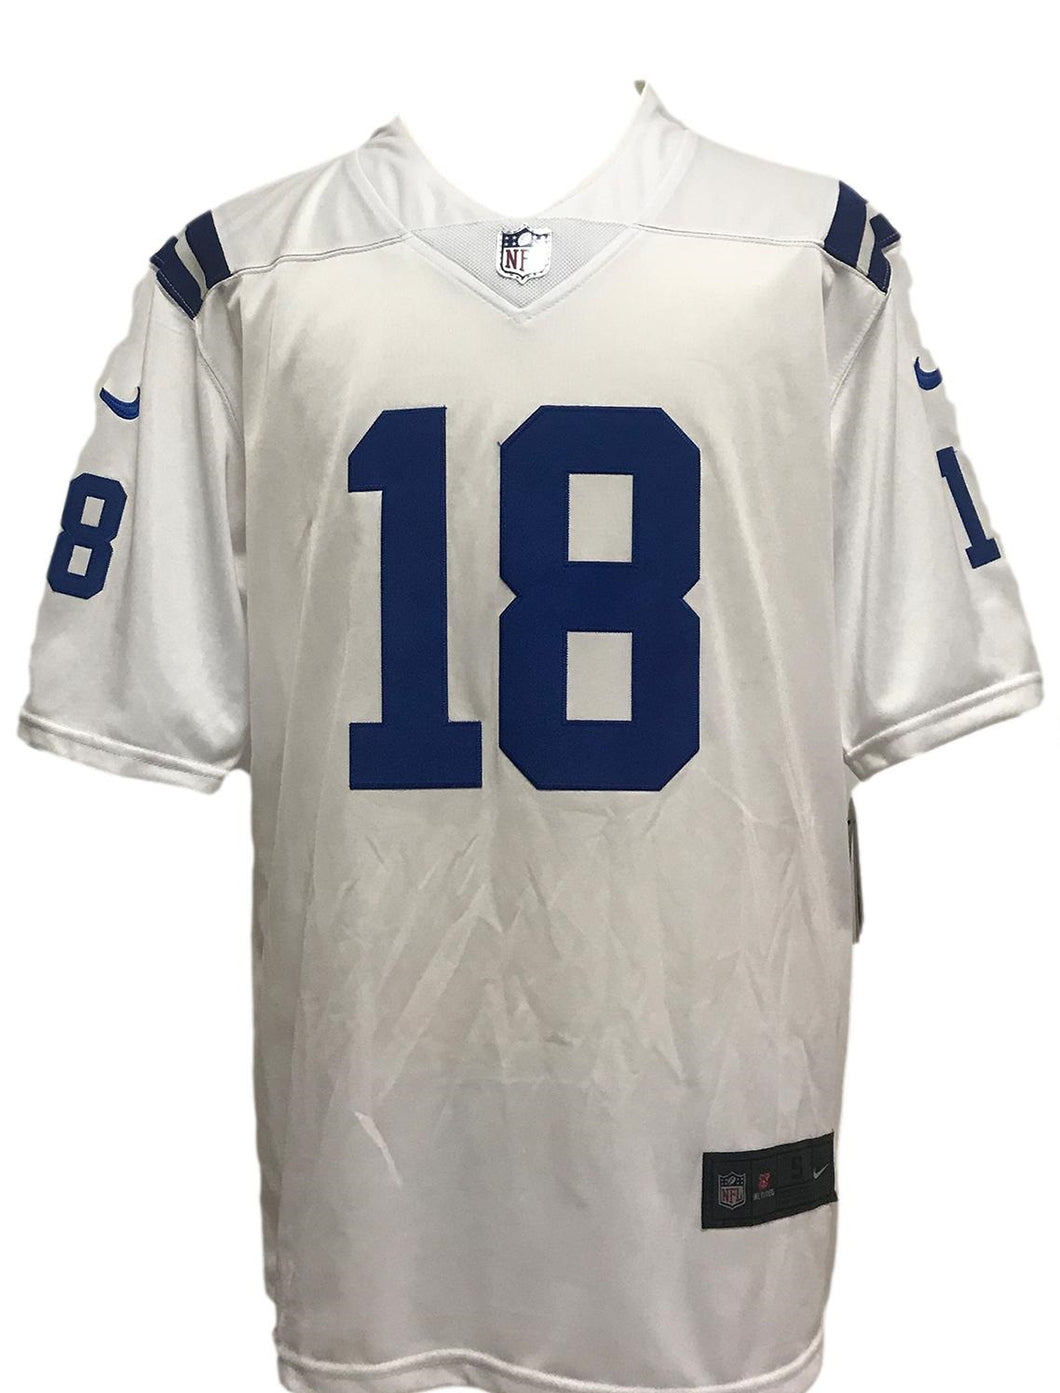 Camisa Indianópolis Colts Peyton Manning #18 NFL